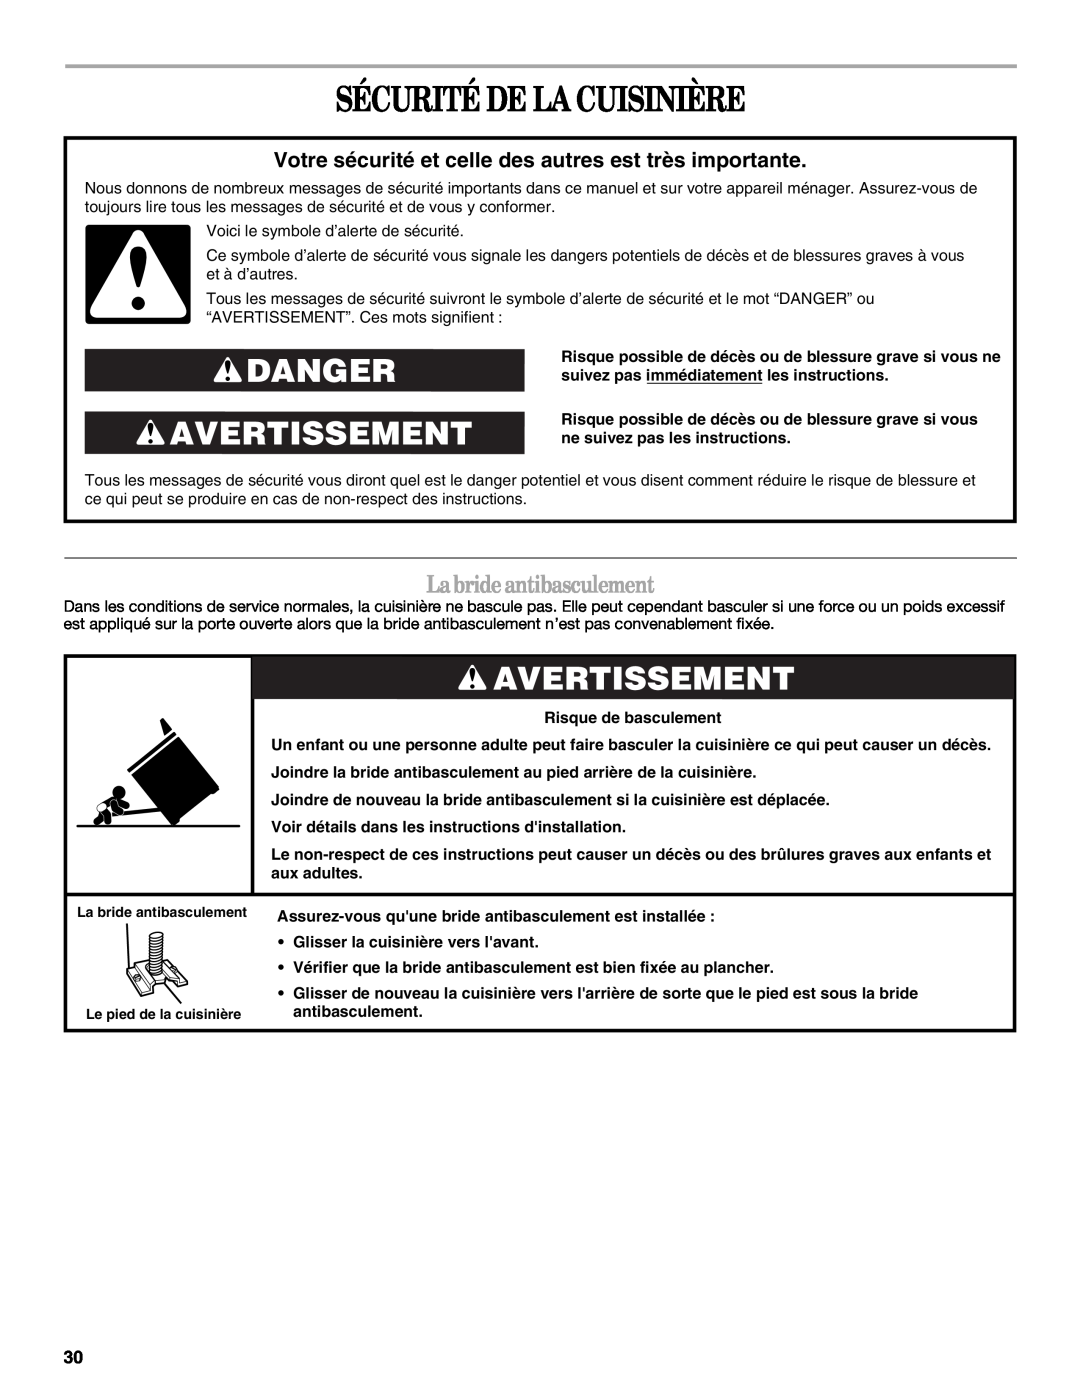 Whirlpool GERC4110PB2 manual Sécurité De La Cuisinière, Danger Avertissement, La bride antibasculement 